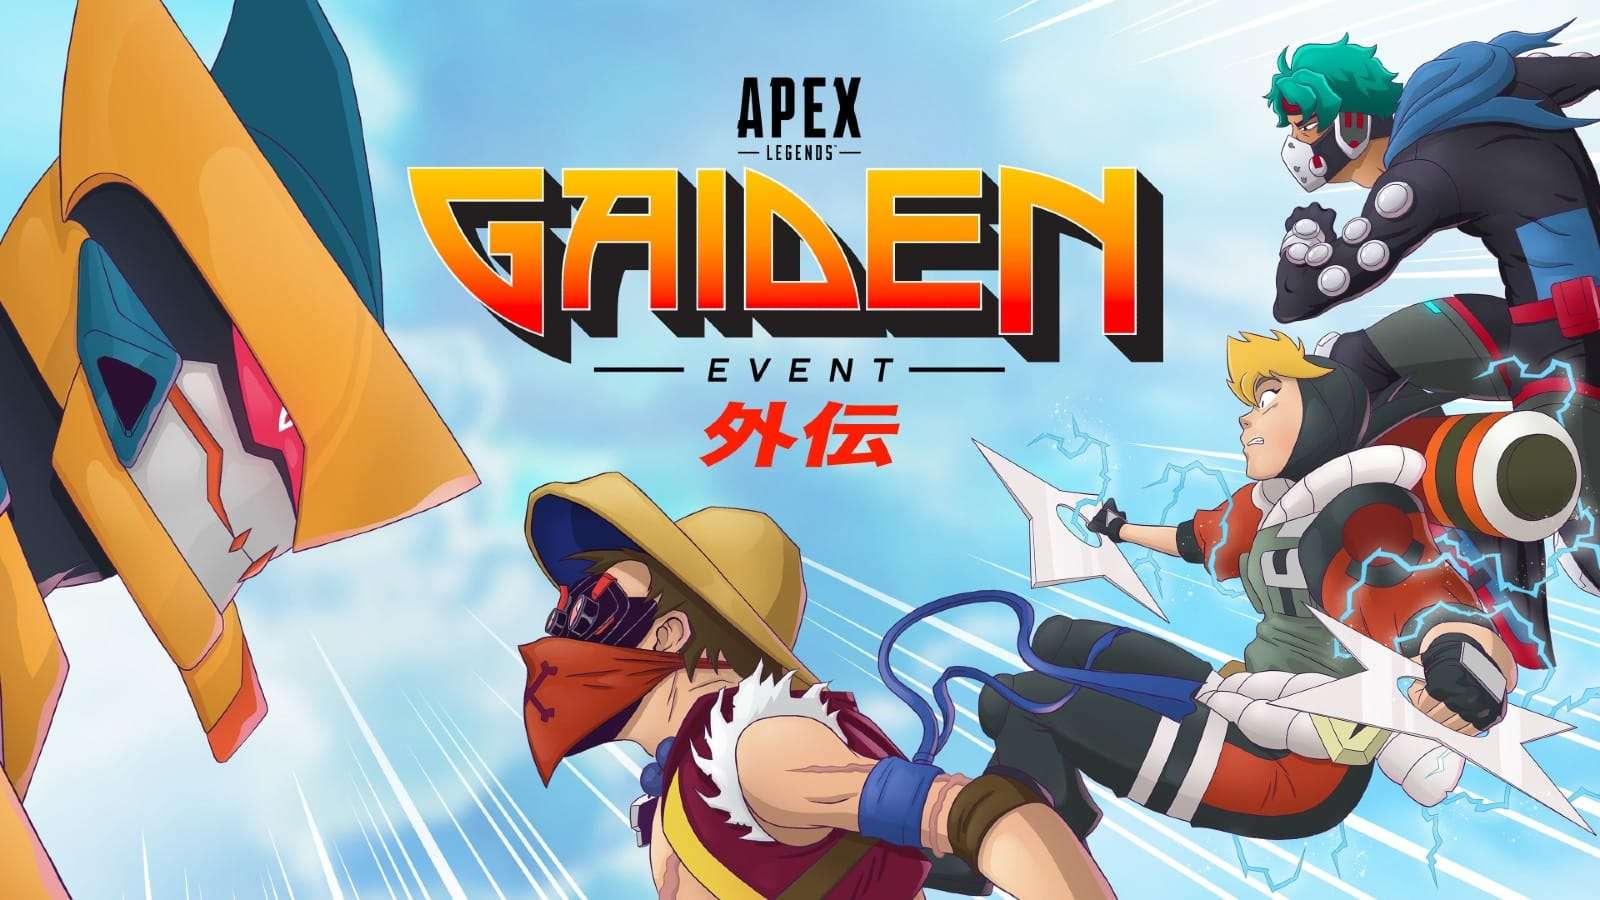 Gaiden event Apex Legends